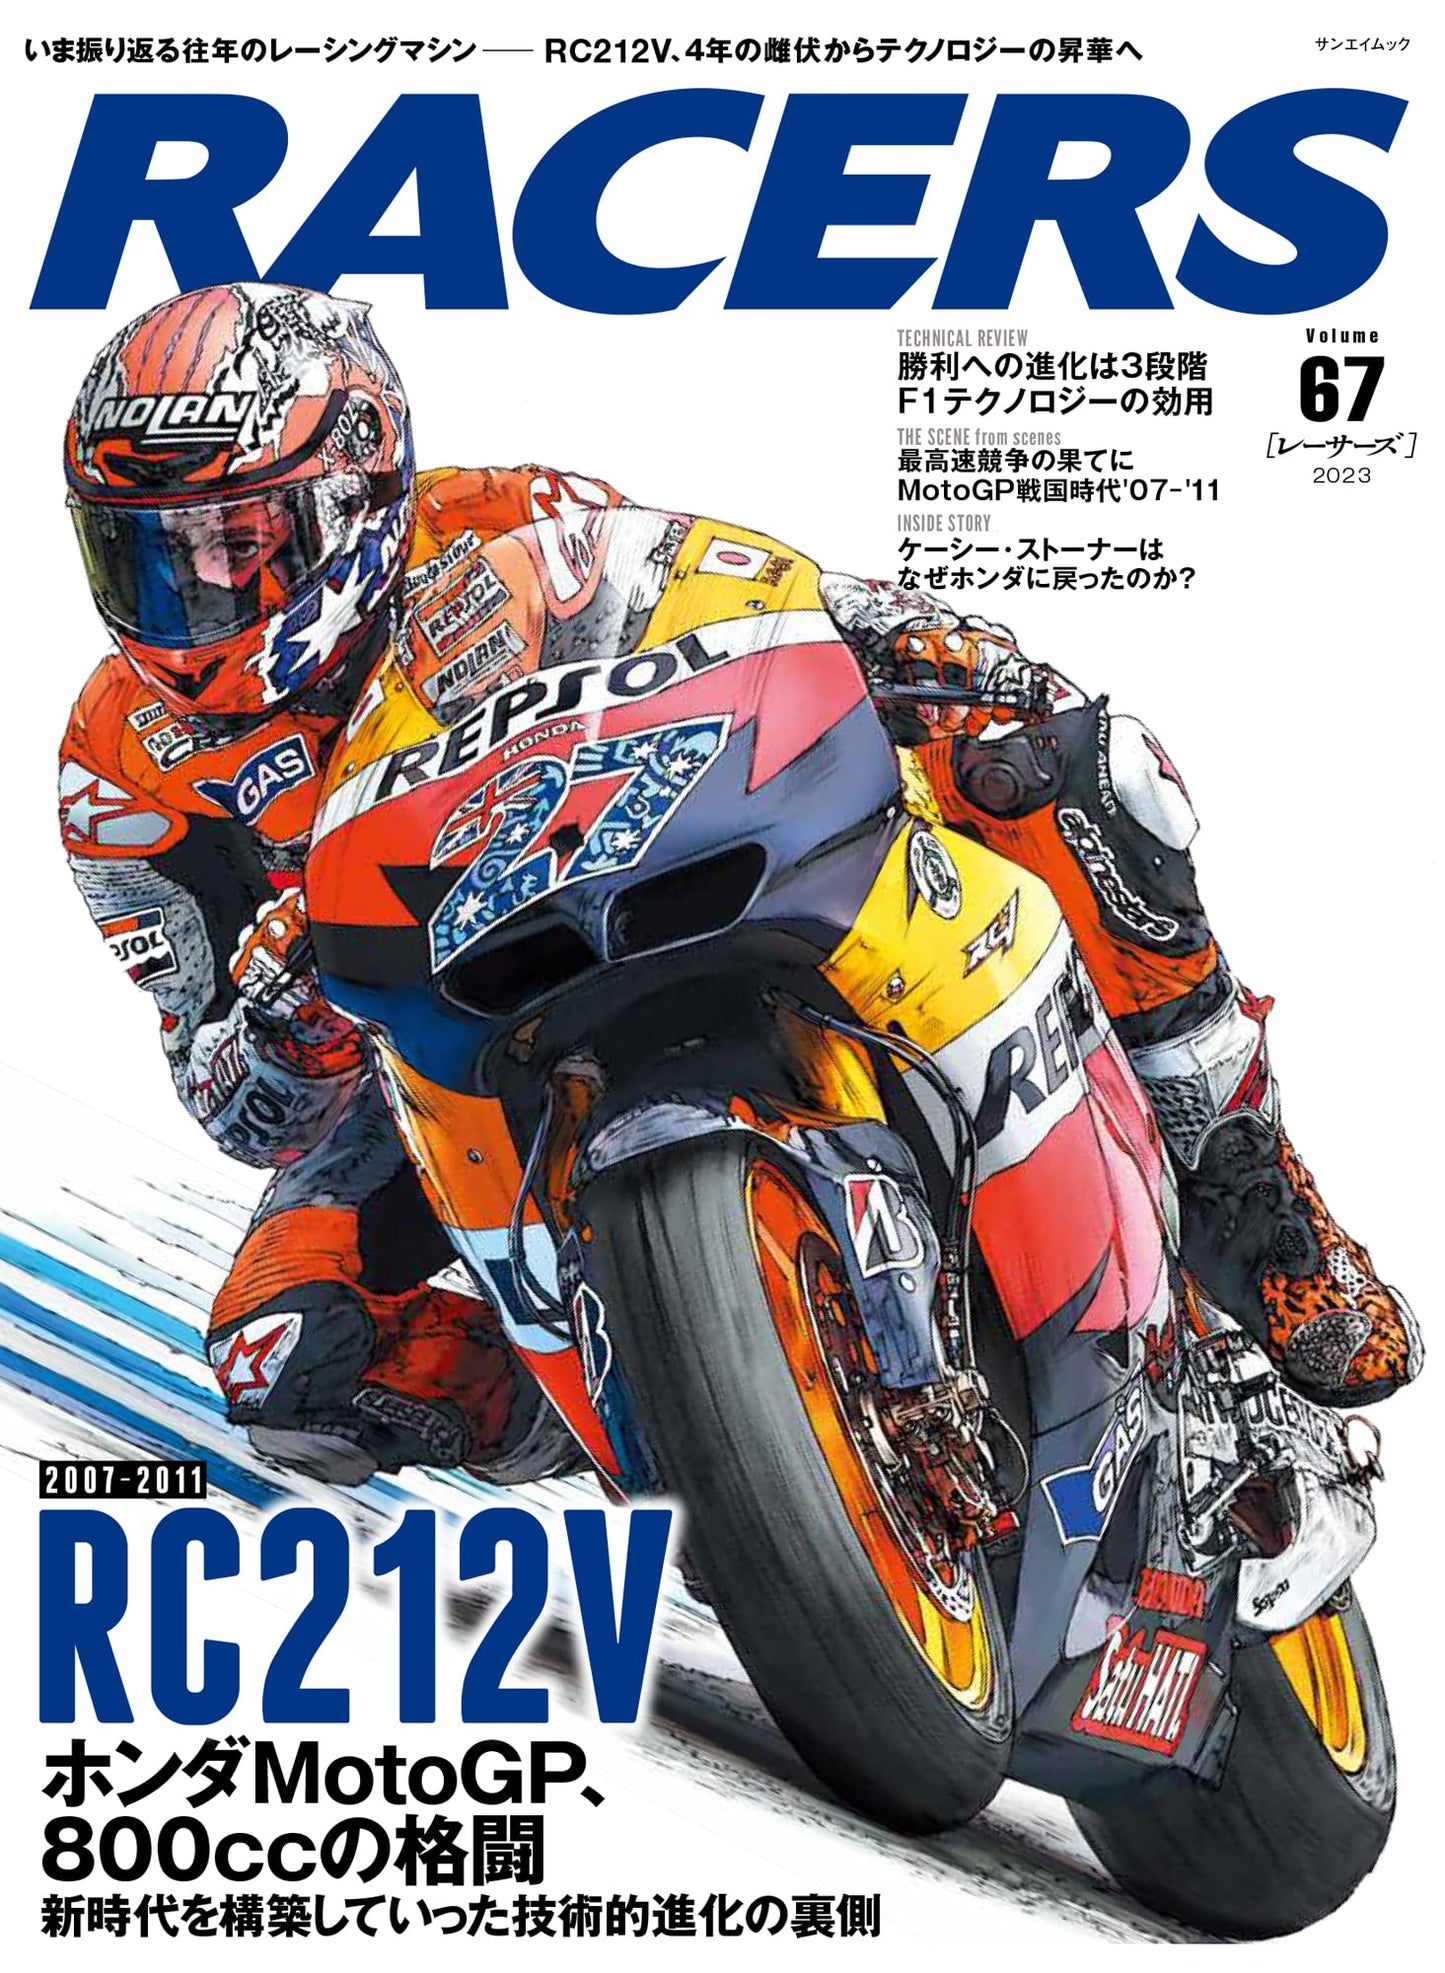 RACERS Vol.67 2007-2011 RC212V